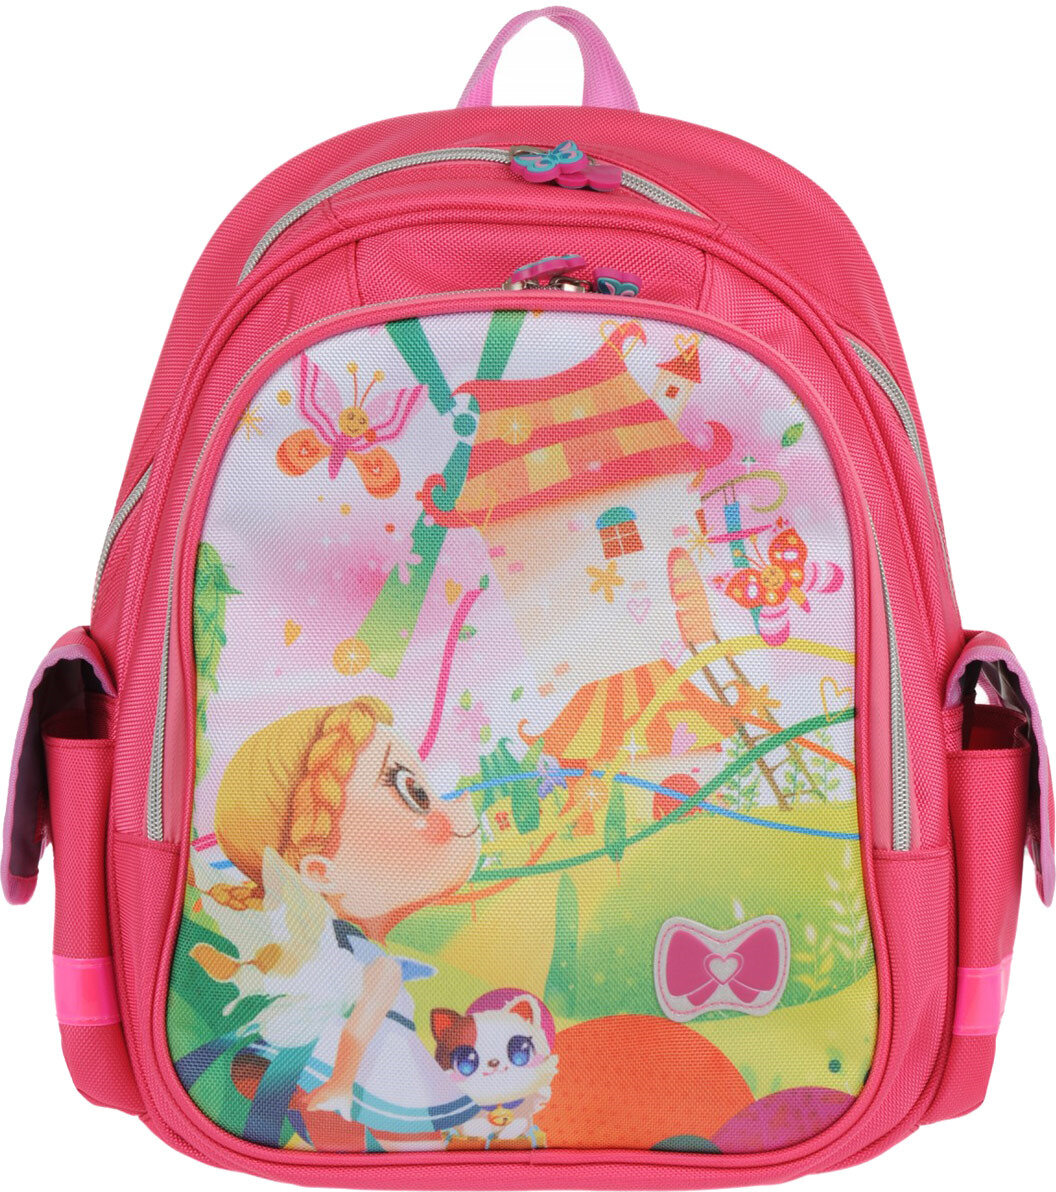 Ранец ученический для девочек, школьный рюкзак, детский, на 1 сентября, первый звонок, ортопедический, розовый, Alliance for Kids 5-851-1505СМ